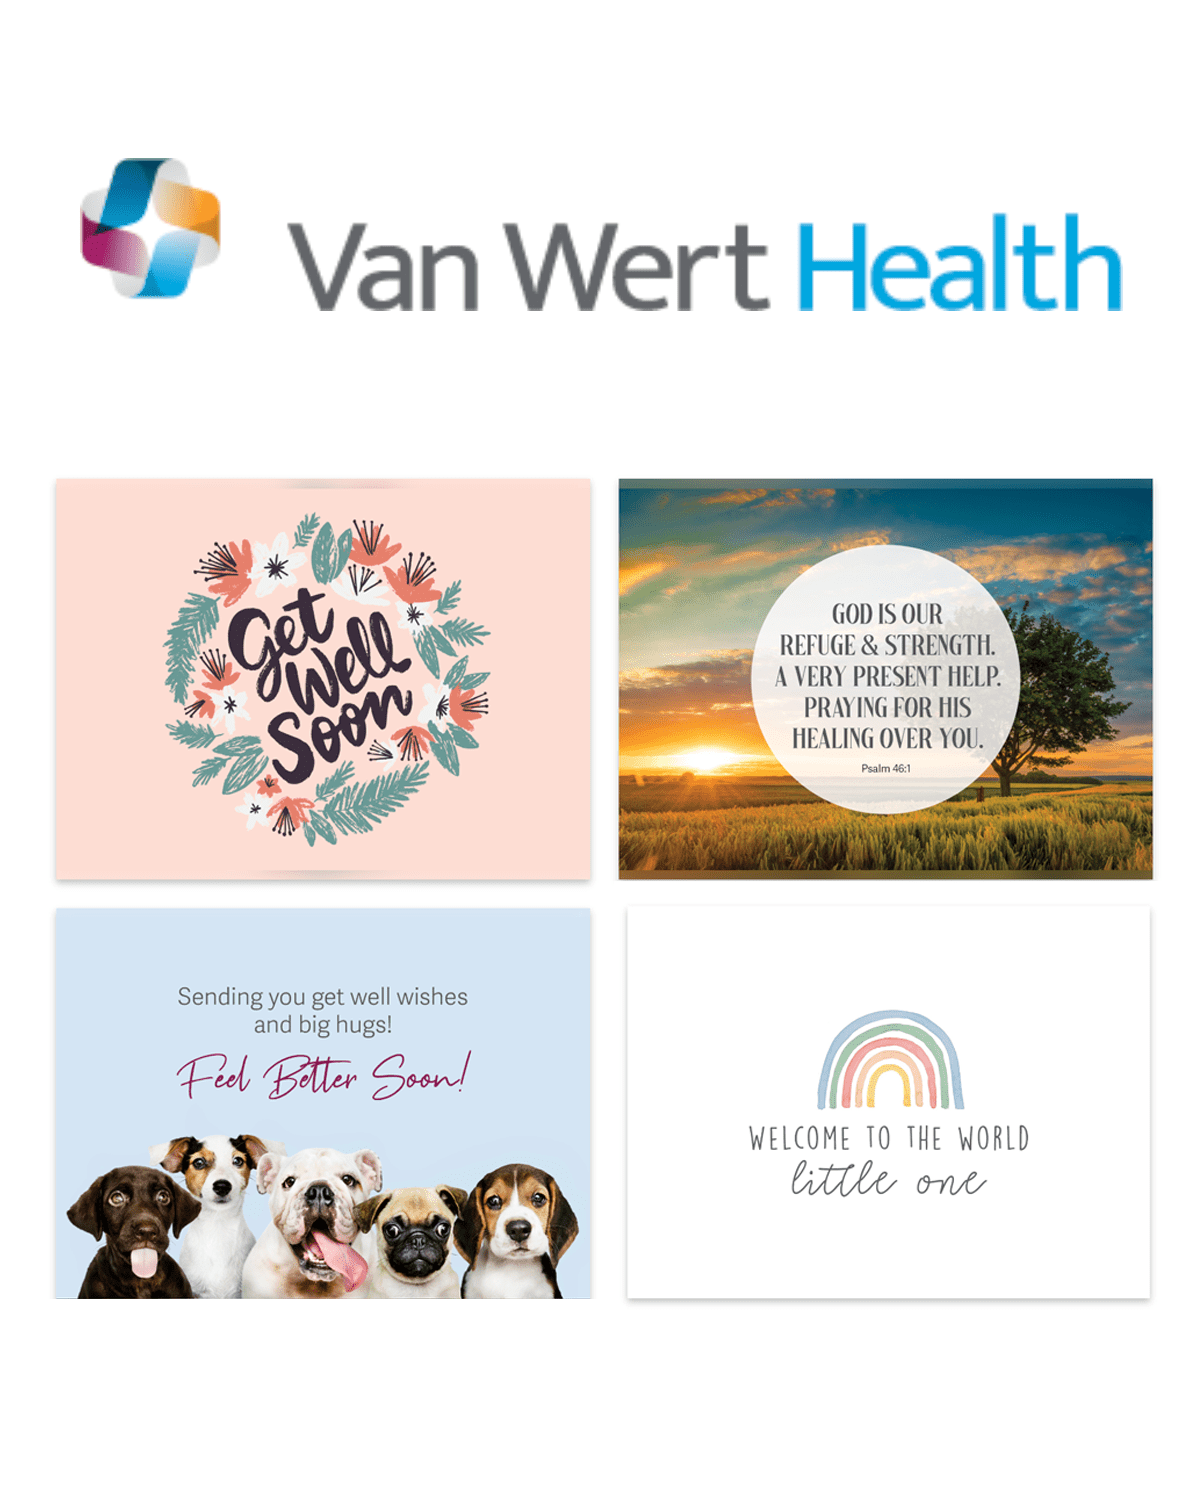 Van Wert Health